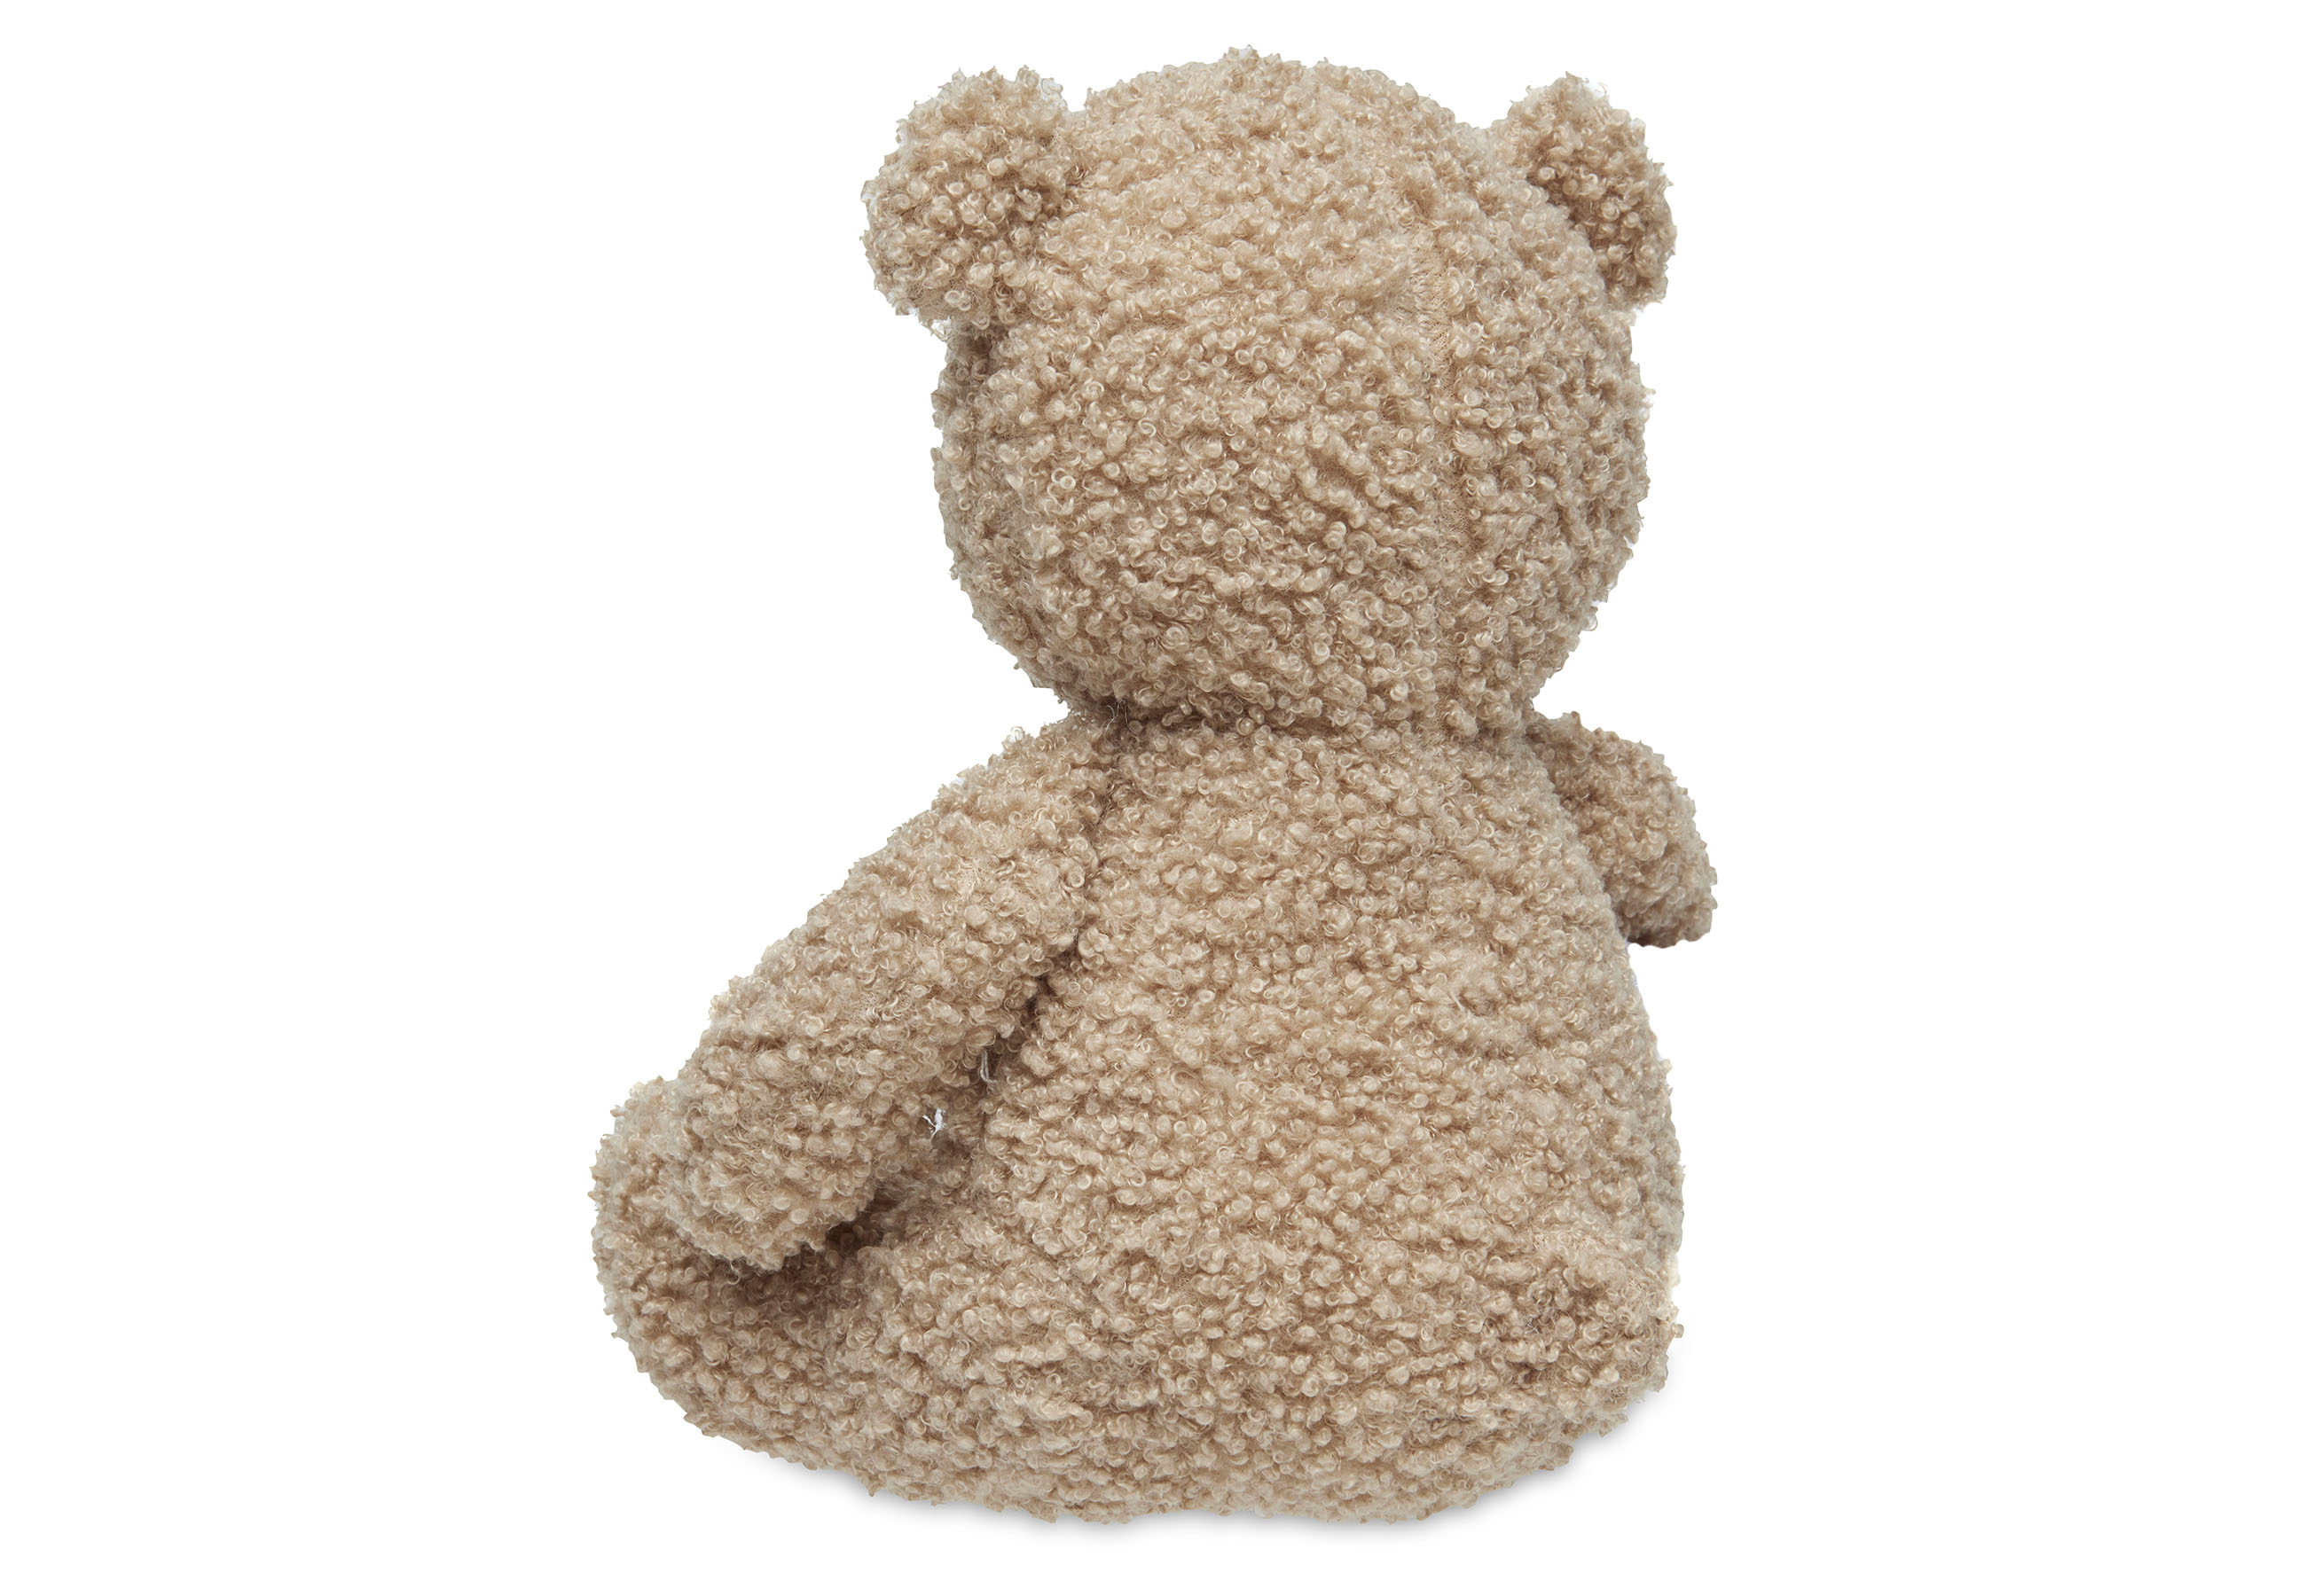 Knuffel Teddy Bear - Biscuit